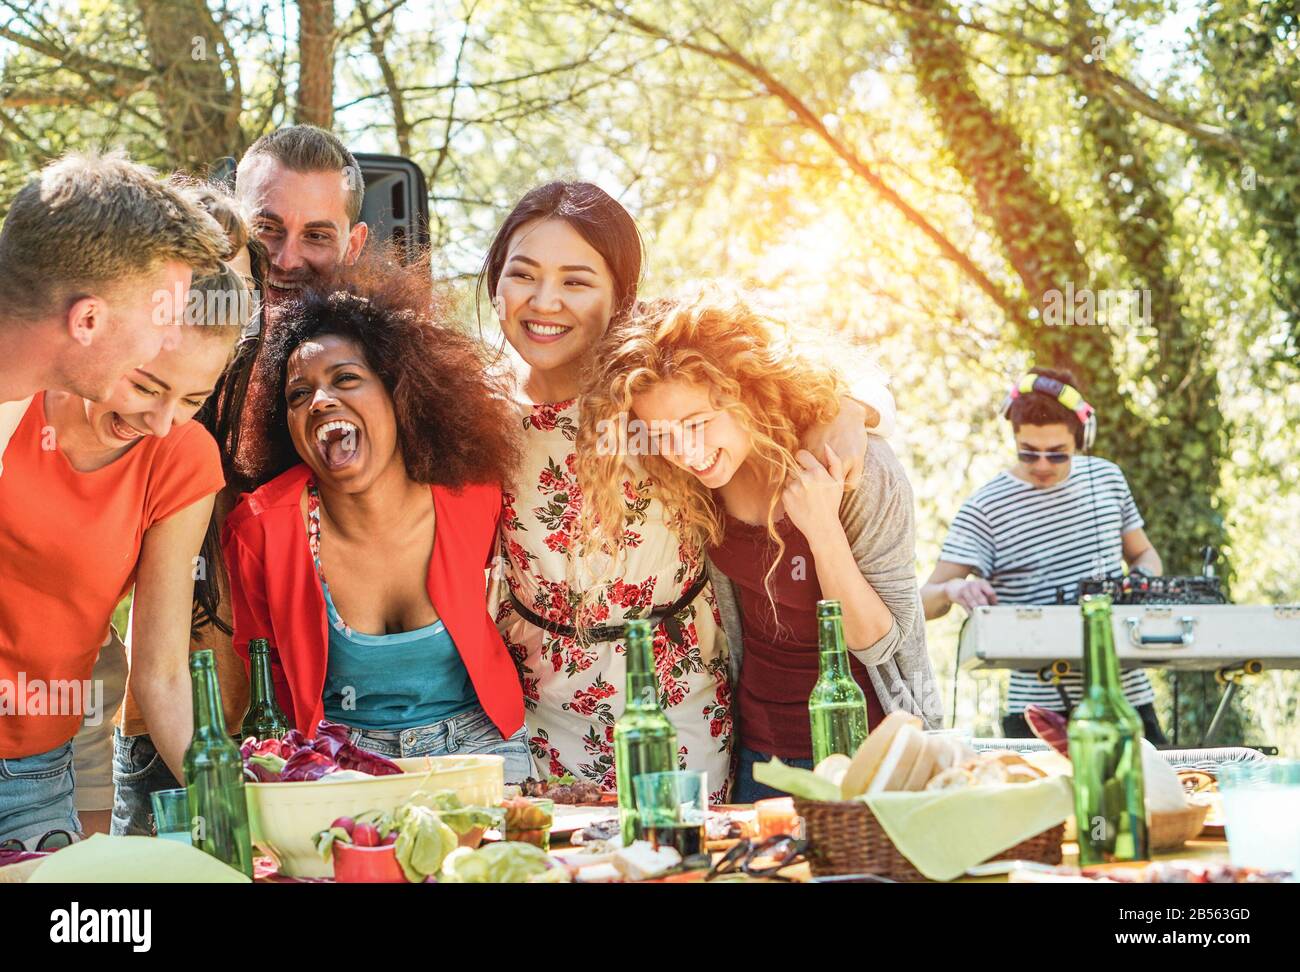 Gruppe junger Leute, die ein Barbecue-Party-Musikfestival in der Natur haben - Fröhliche Freunde lachen und trinken Bier bei einem escusiven Event mit dj-Set-Mixing Stockfoto